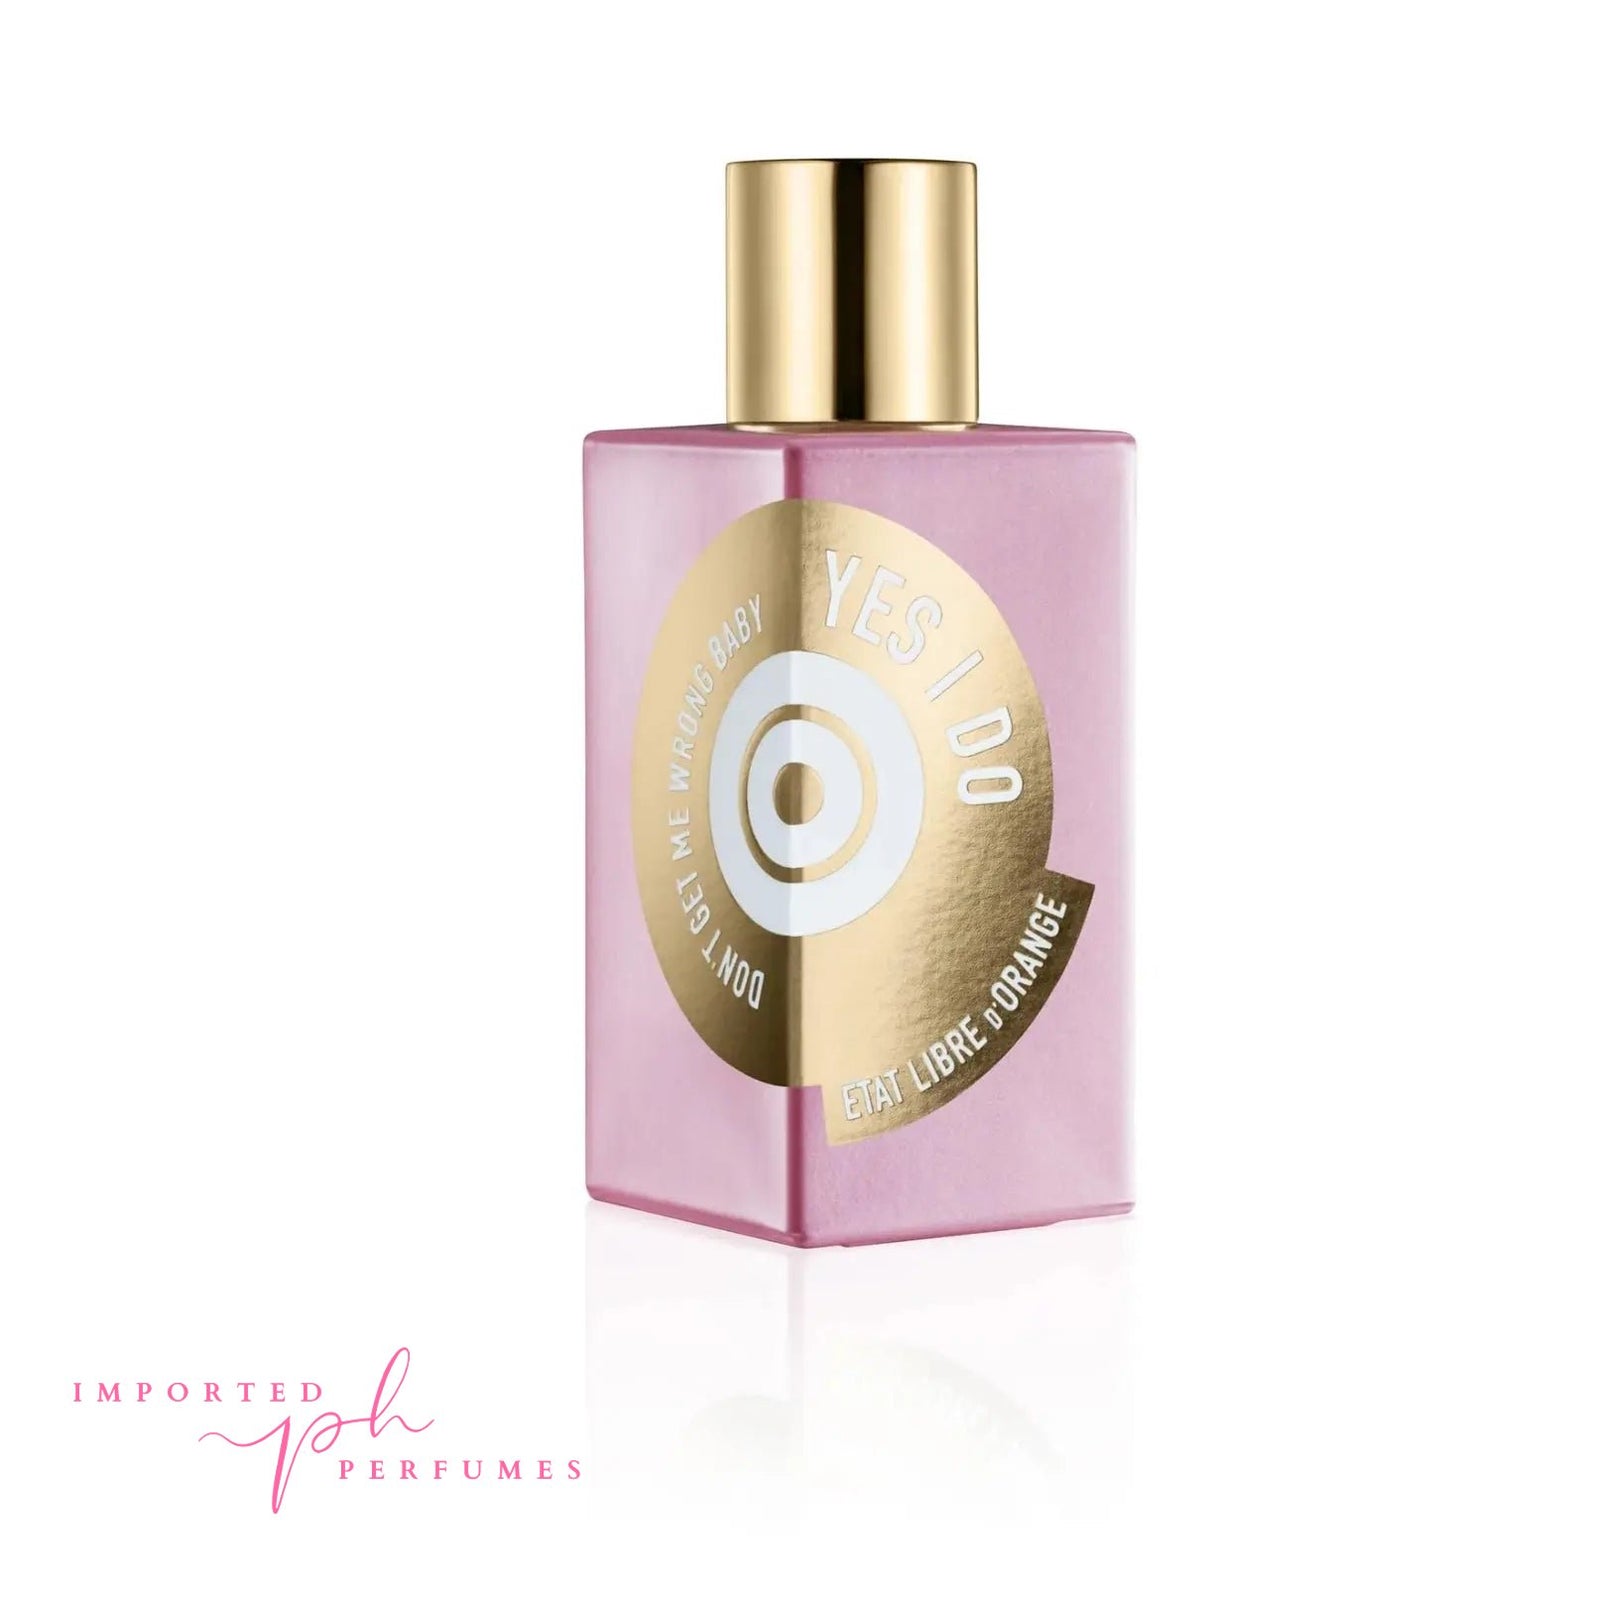 Etat Libre d'Orange Yes I Do Eau De Parfum Women 100ml Imported Perfumes & Beauty Store